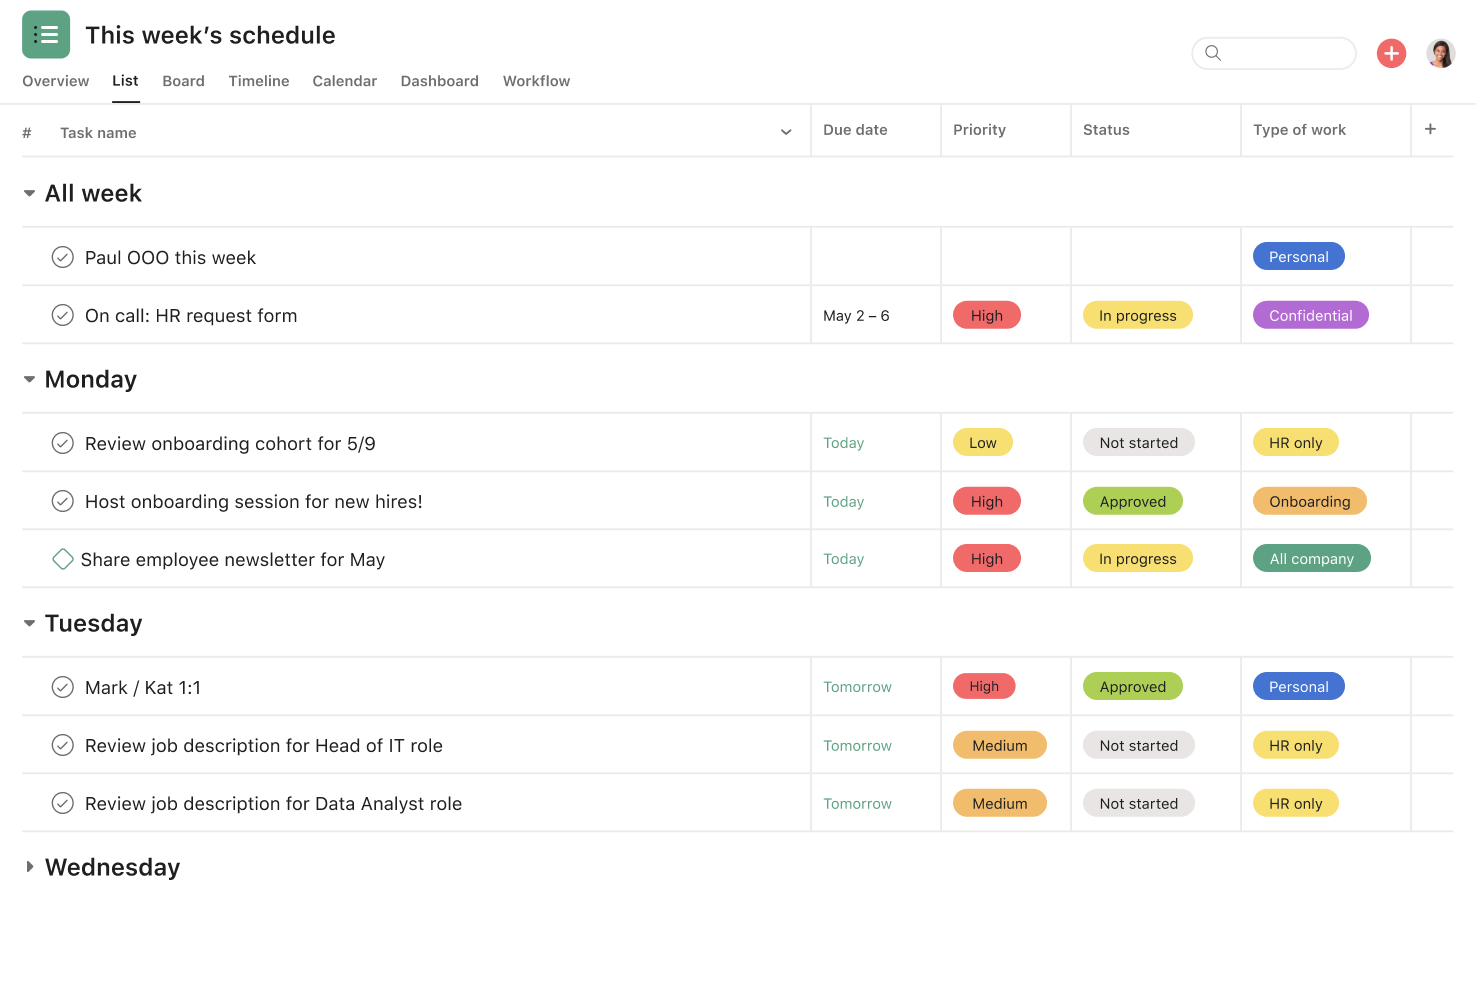 [Interface do produto] Agenda semanal ordenada por prioridade, status e tipo de trabalho (visualização de lista)